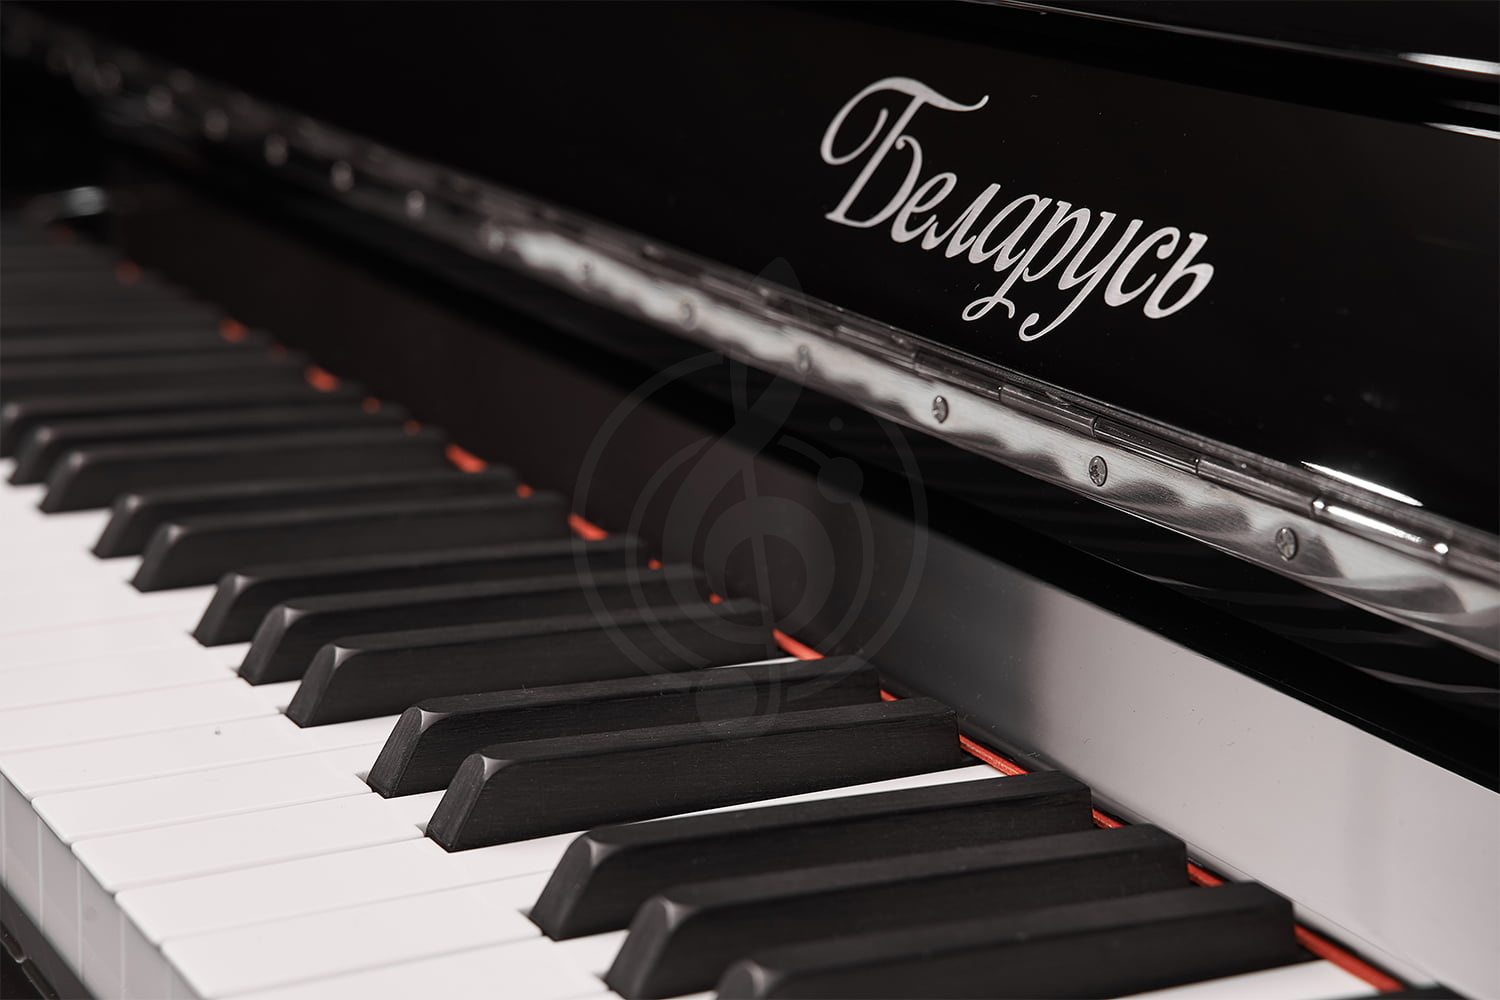 изображение Пианино Беларусь - 9